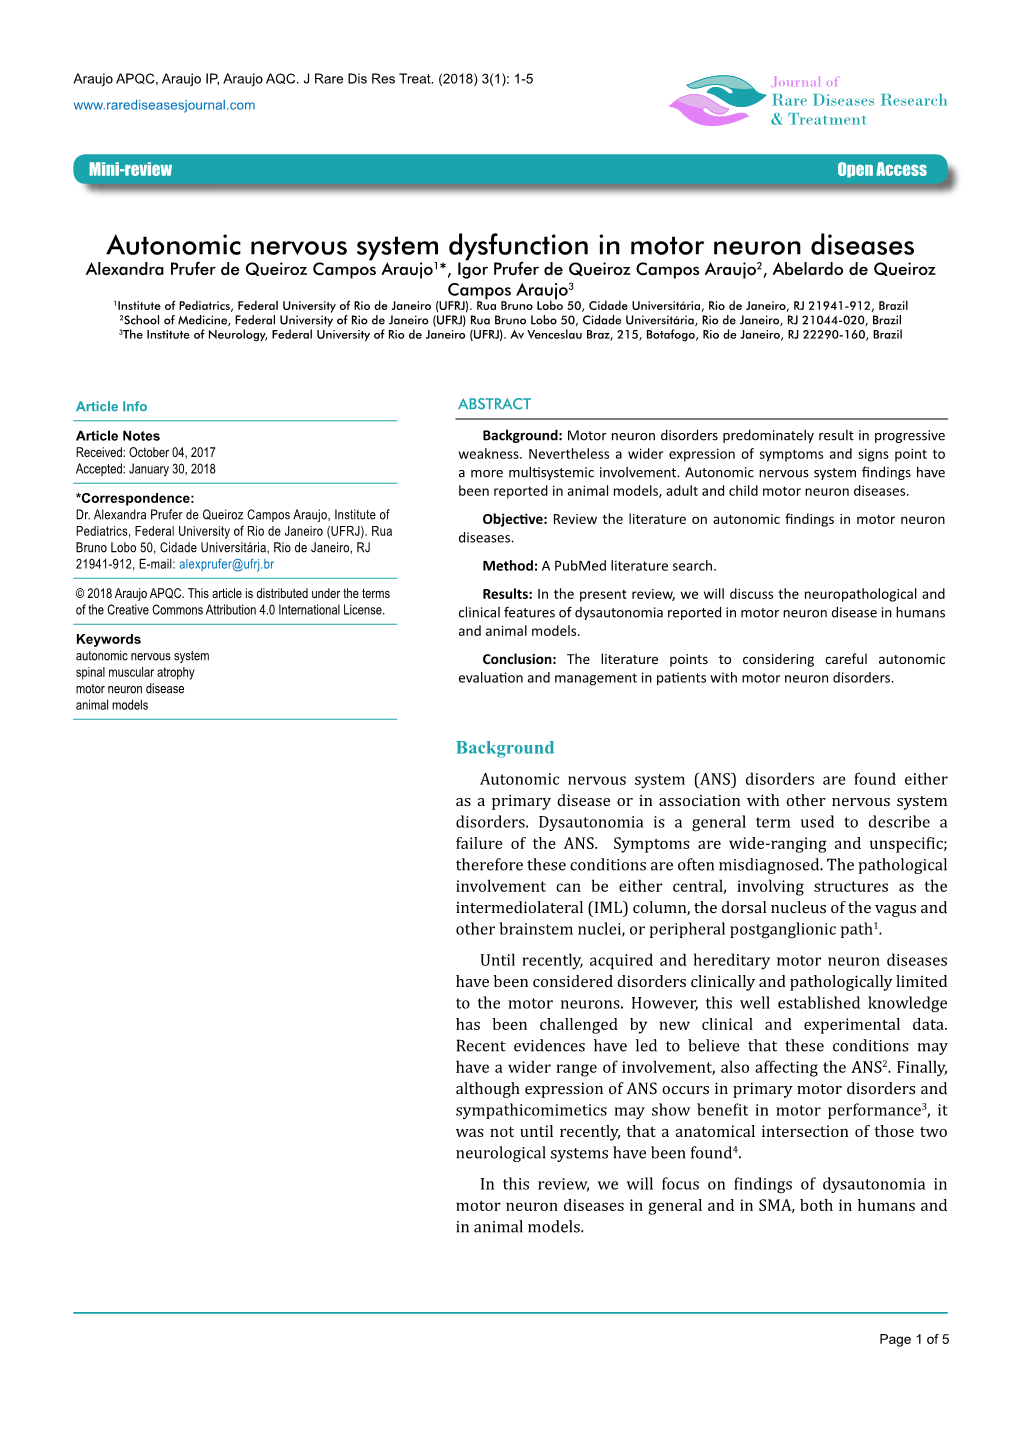 Autonomic Nervous System Dysfunction in Motor Neuron Diseases